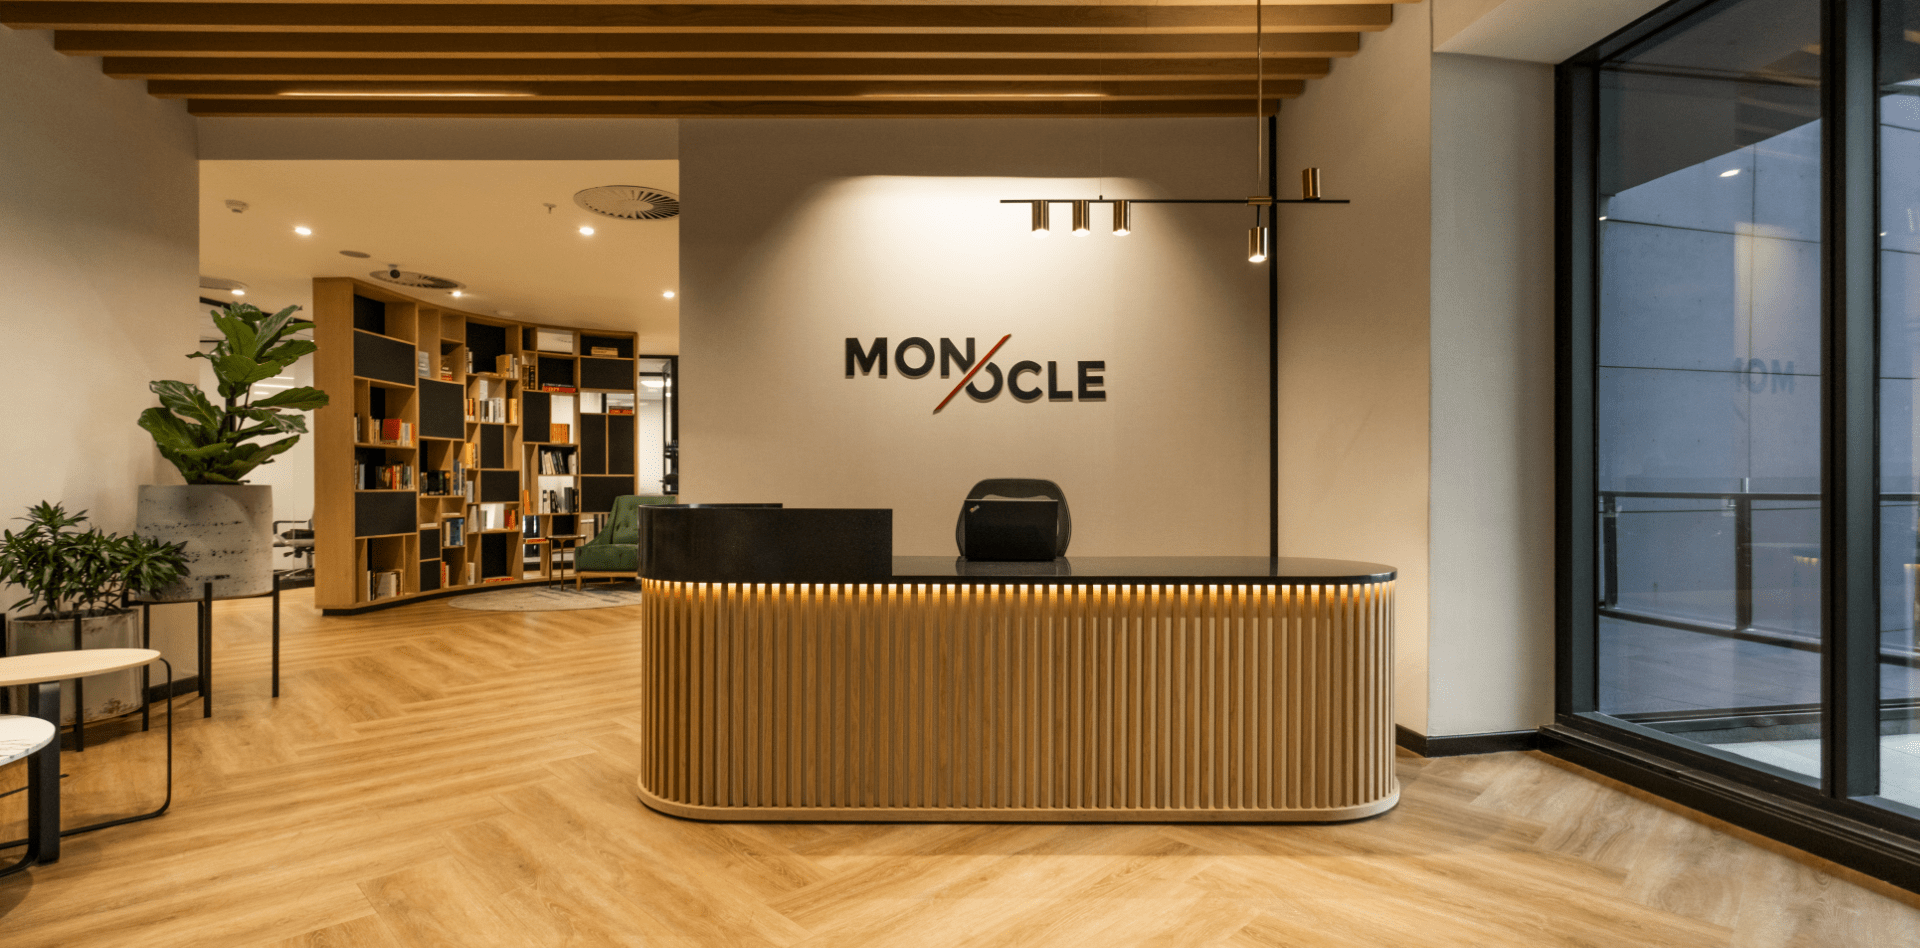 Monocle reception